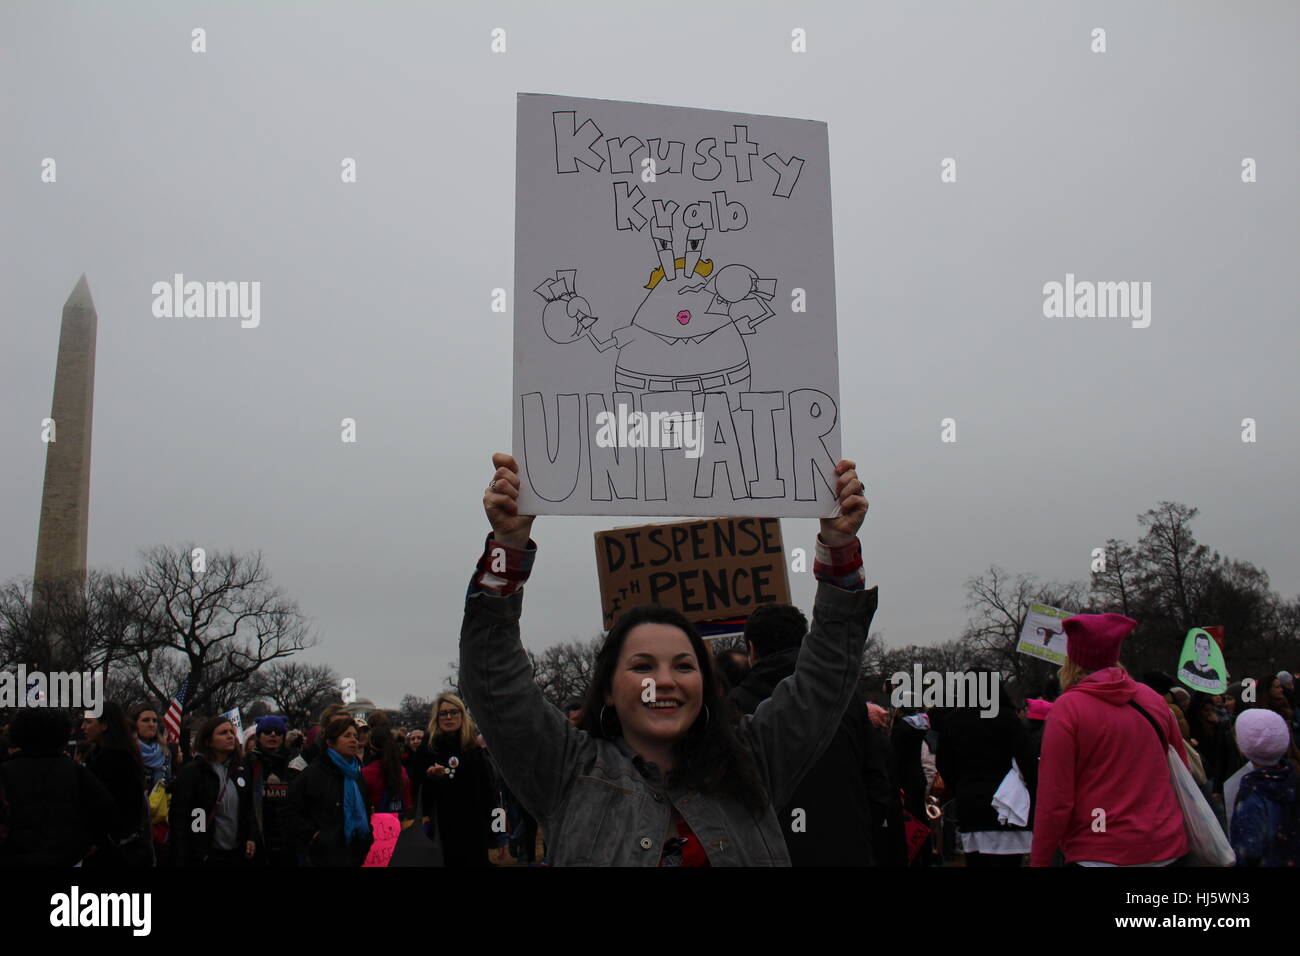 Distrikt von Columbia, USA. 21 Jan, 2017. Eine Frau auf dem Rasen des Weißen Hauses hält ein Schild mit Präsident Donald Trump als Spongebob Schwammkopf Charakter Eugene Krabs mit der Beschriftung 'Krossen Krabbe/unfair" dargestellt. Stockfoto